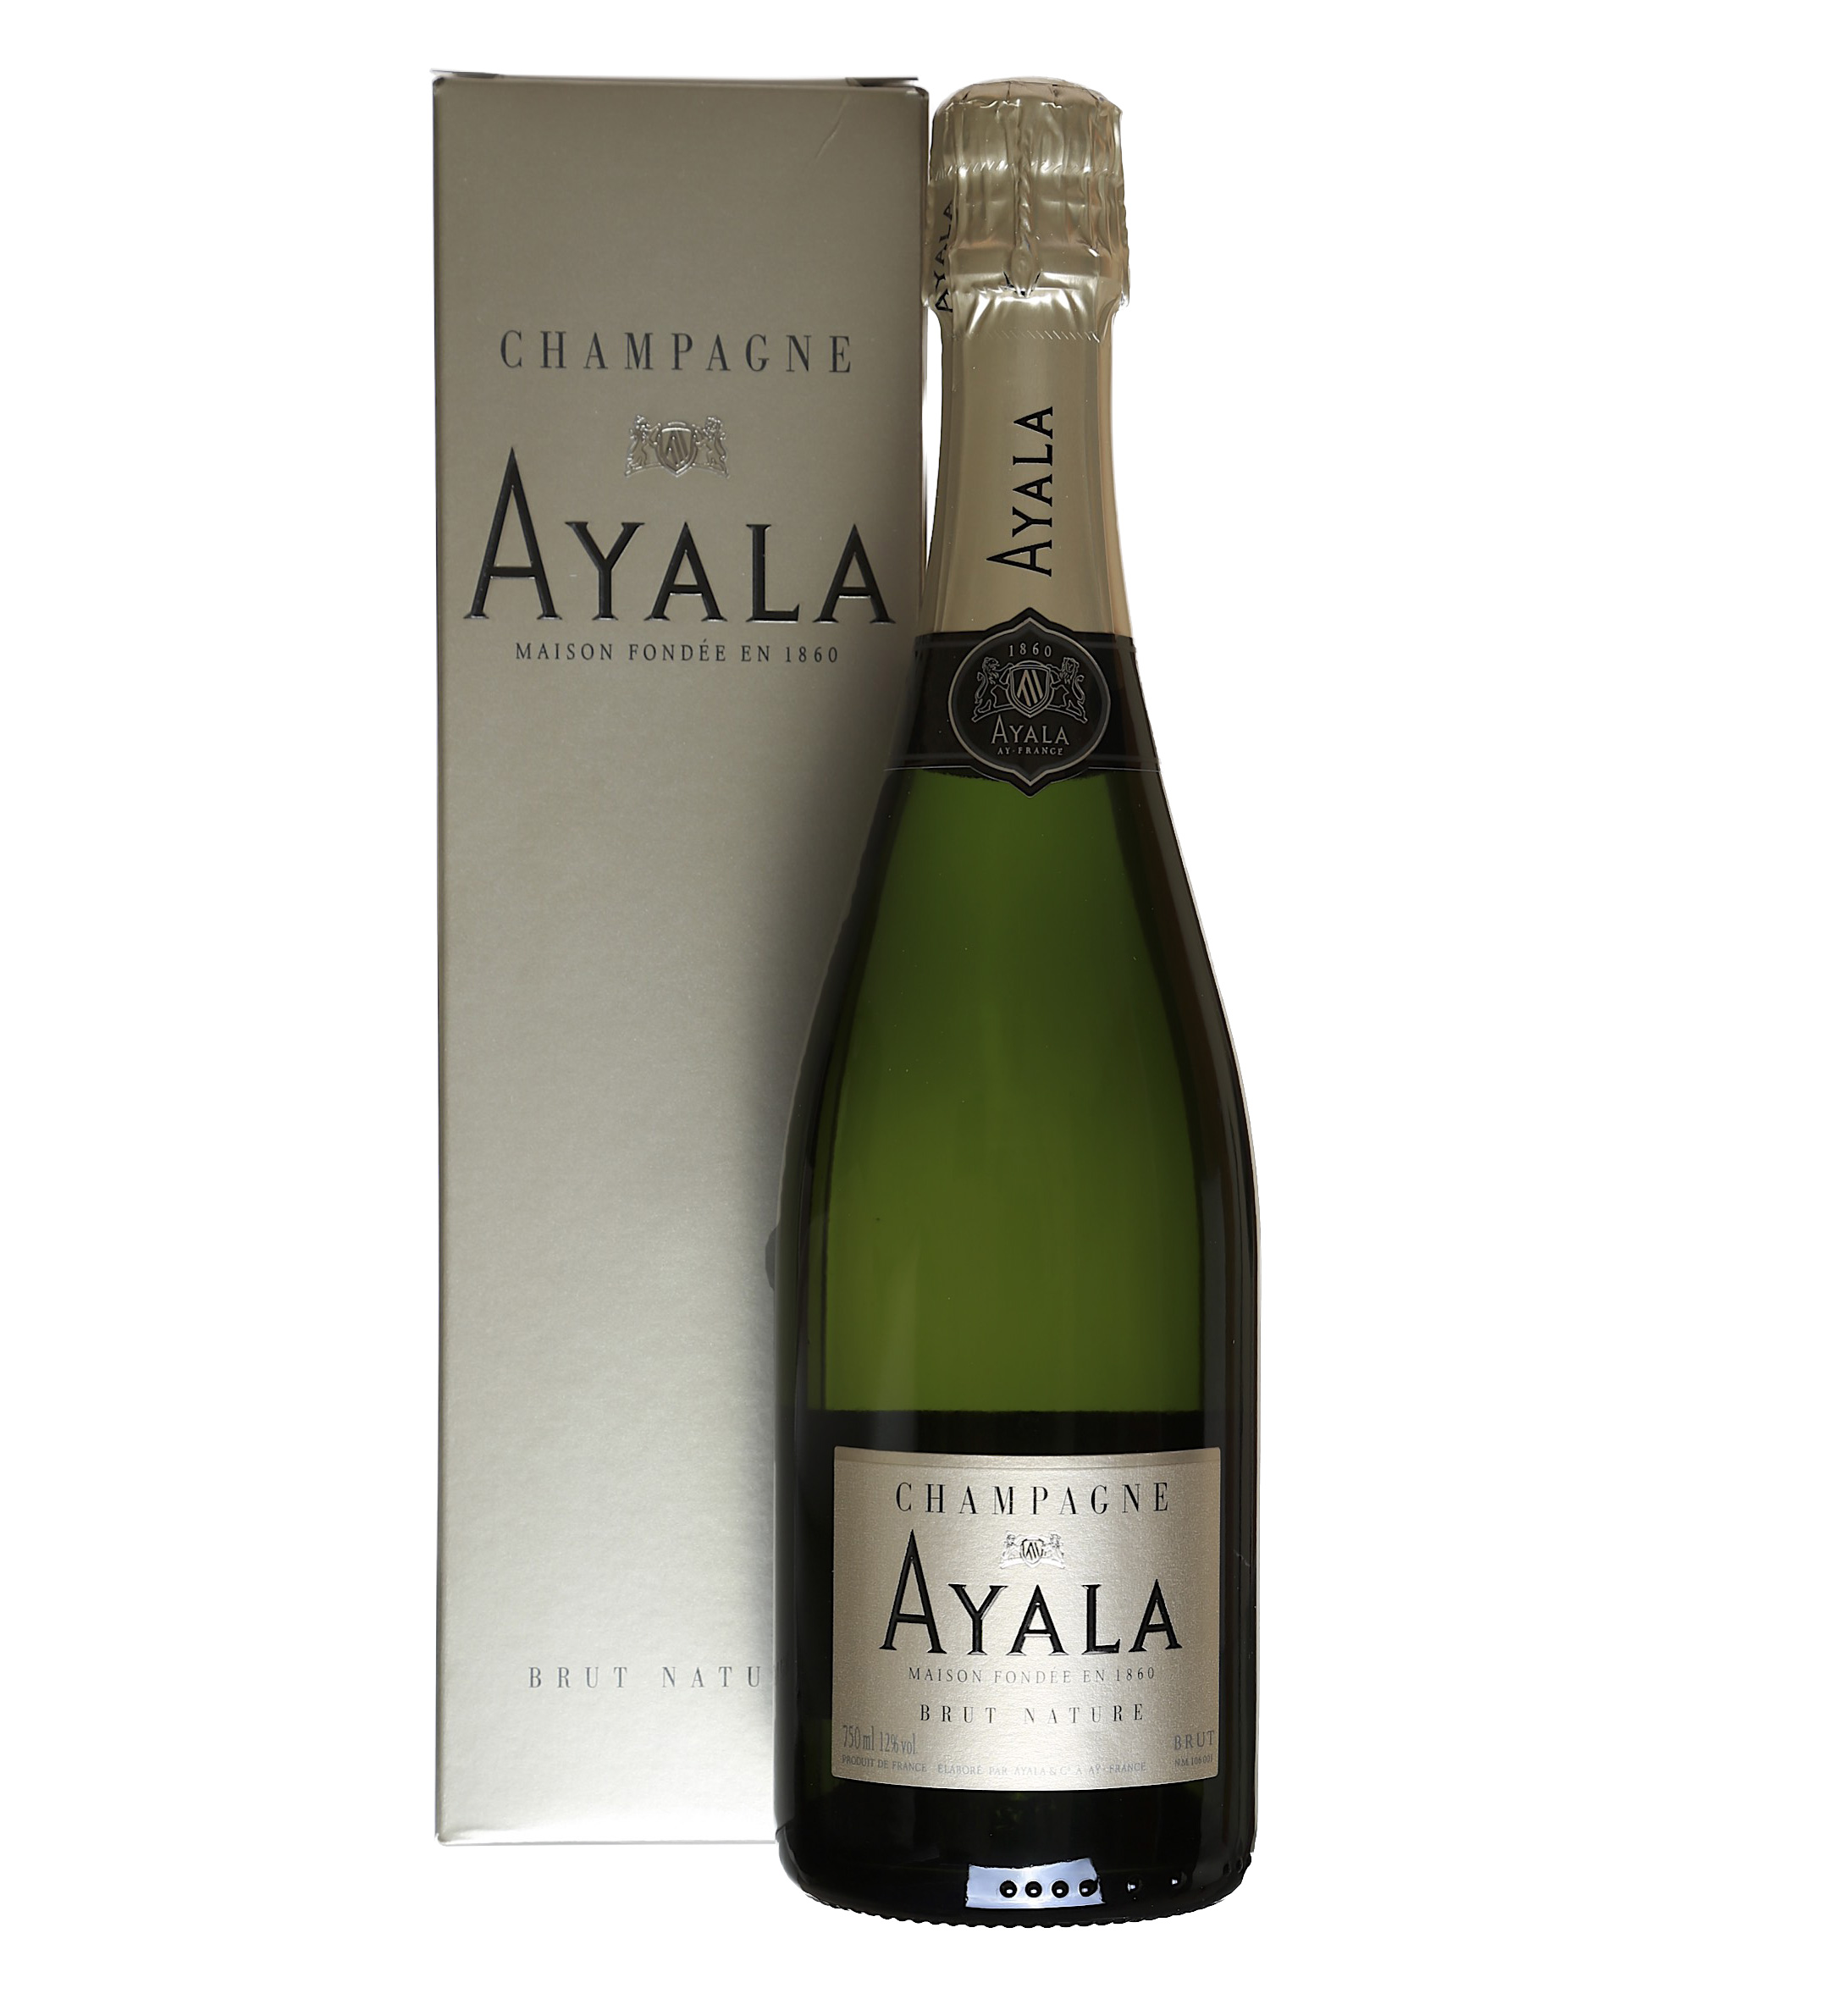 Шампанское двуморье. Ayala, Ayala Brut majeur. Шампанское Ayala. Айяла брют мажор. Аяла шампанское.